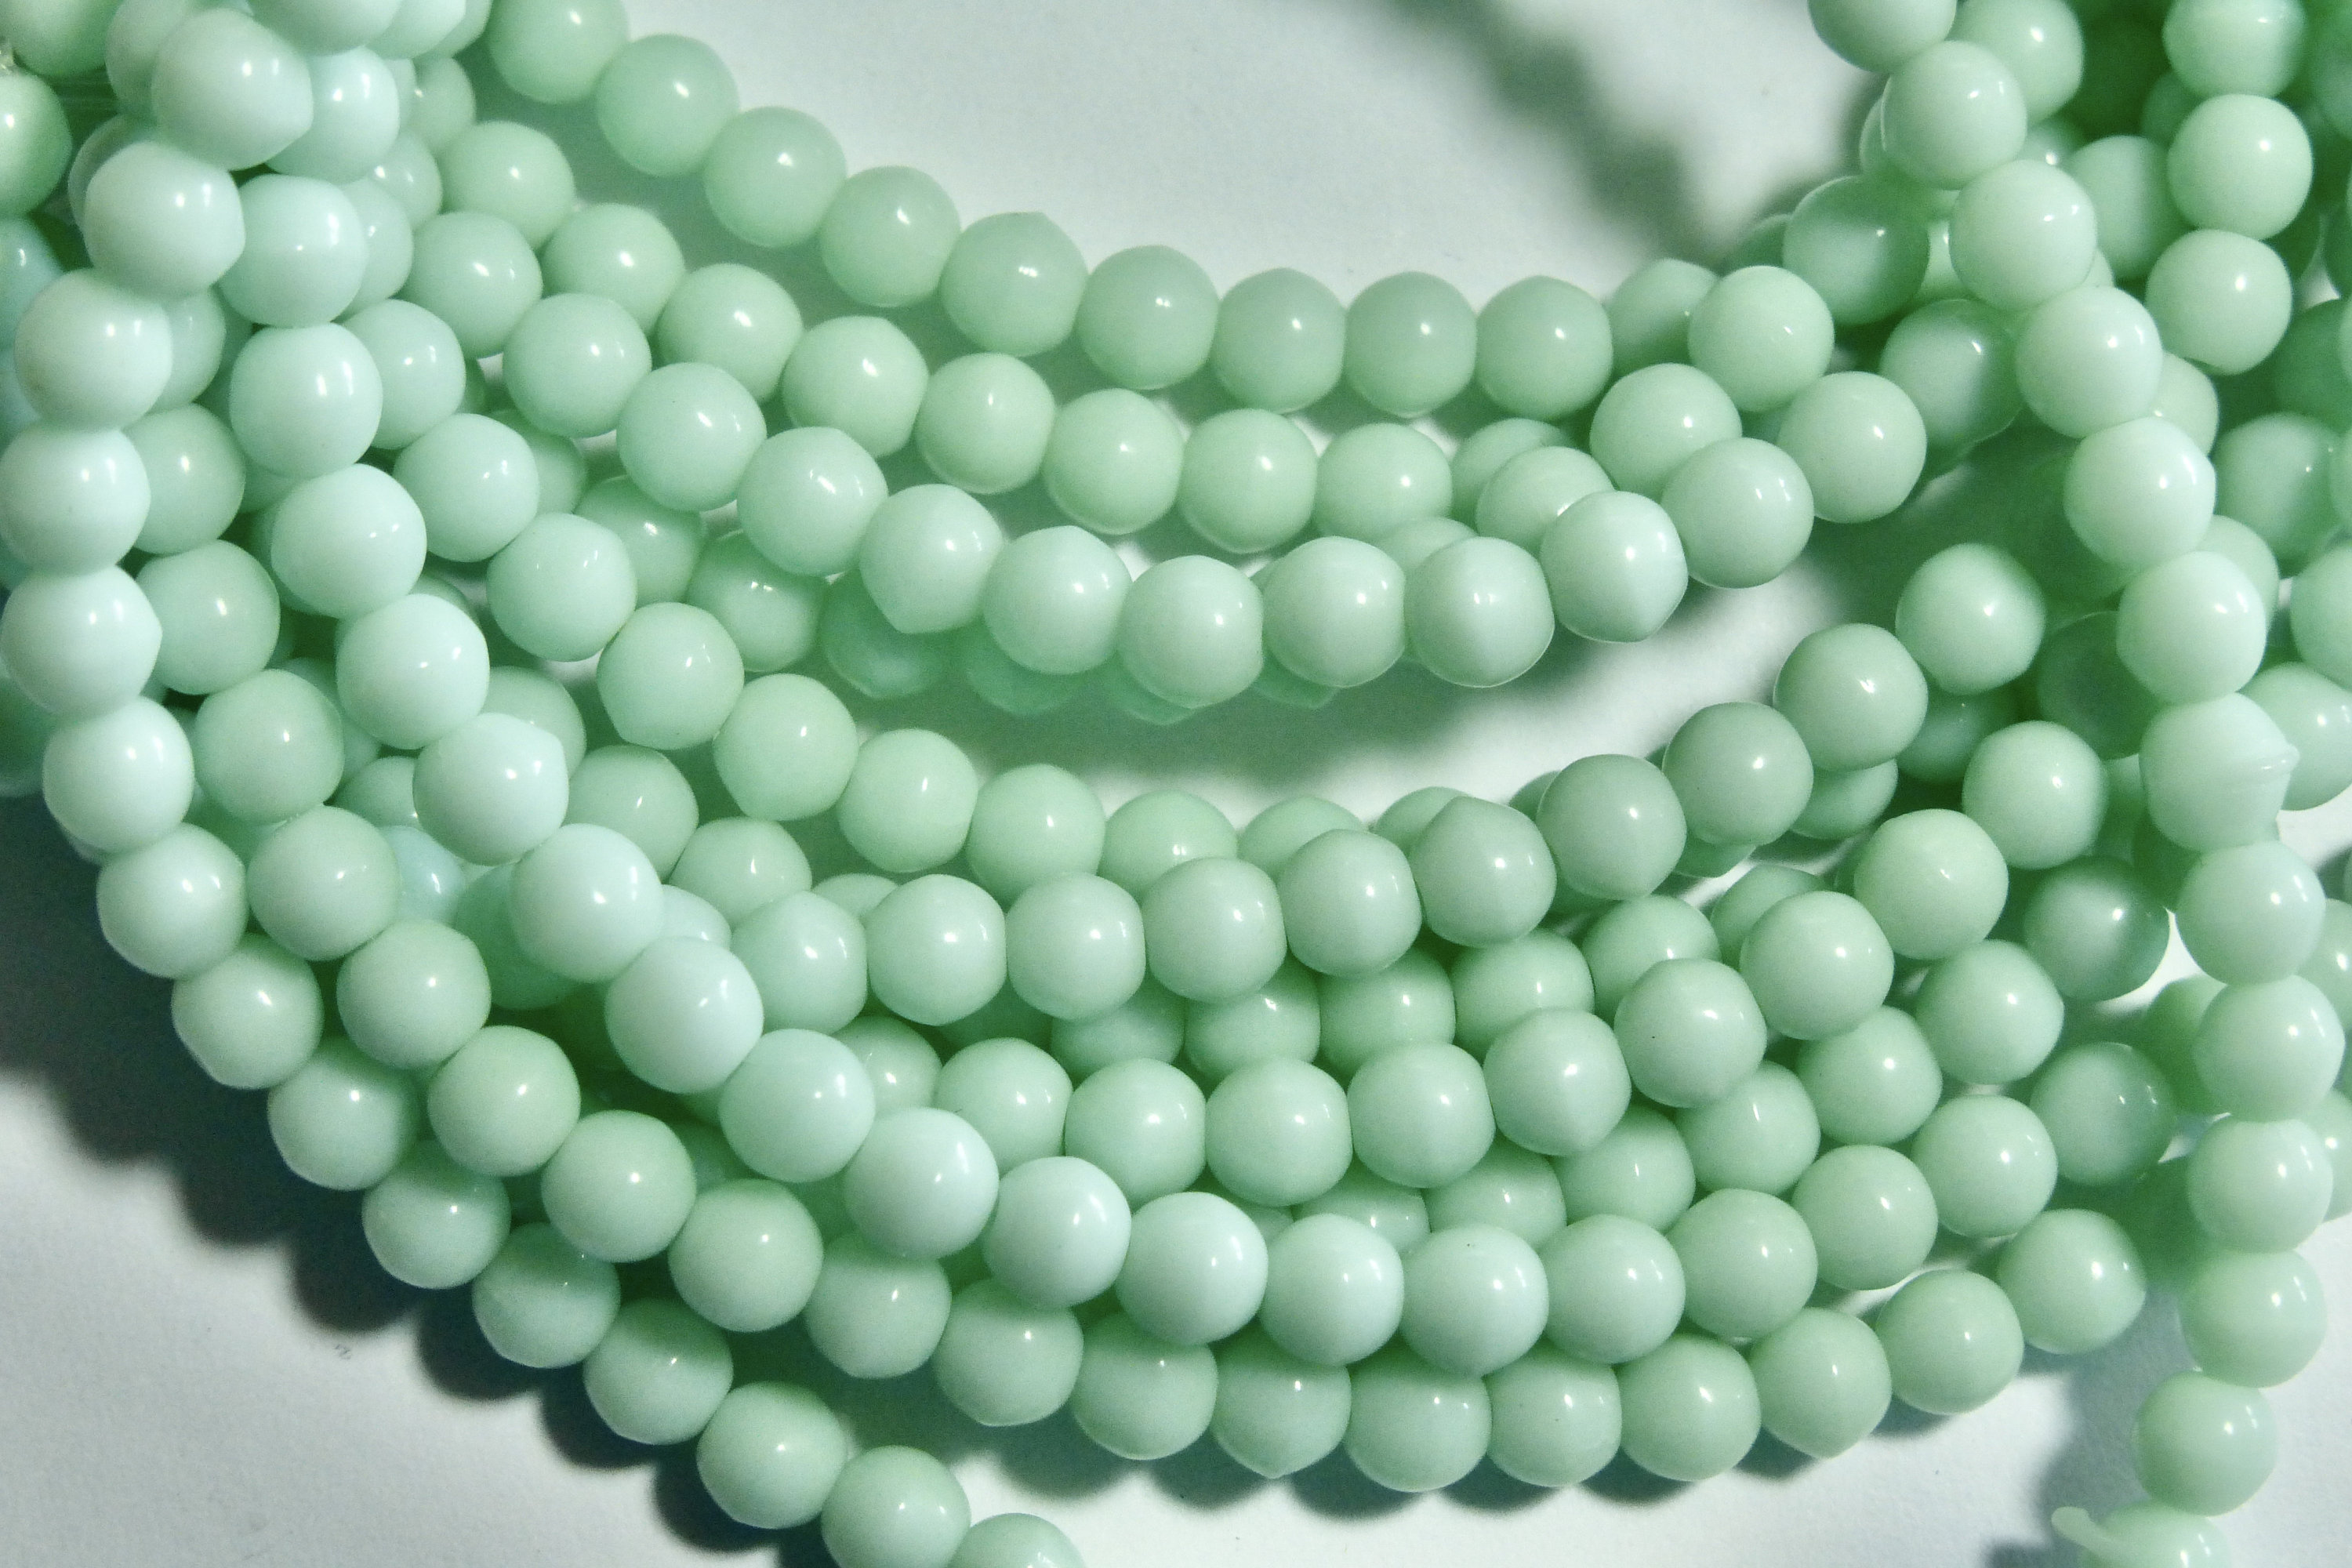 800PK Small Shades of Green Hair Beads